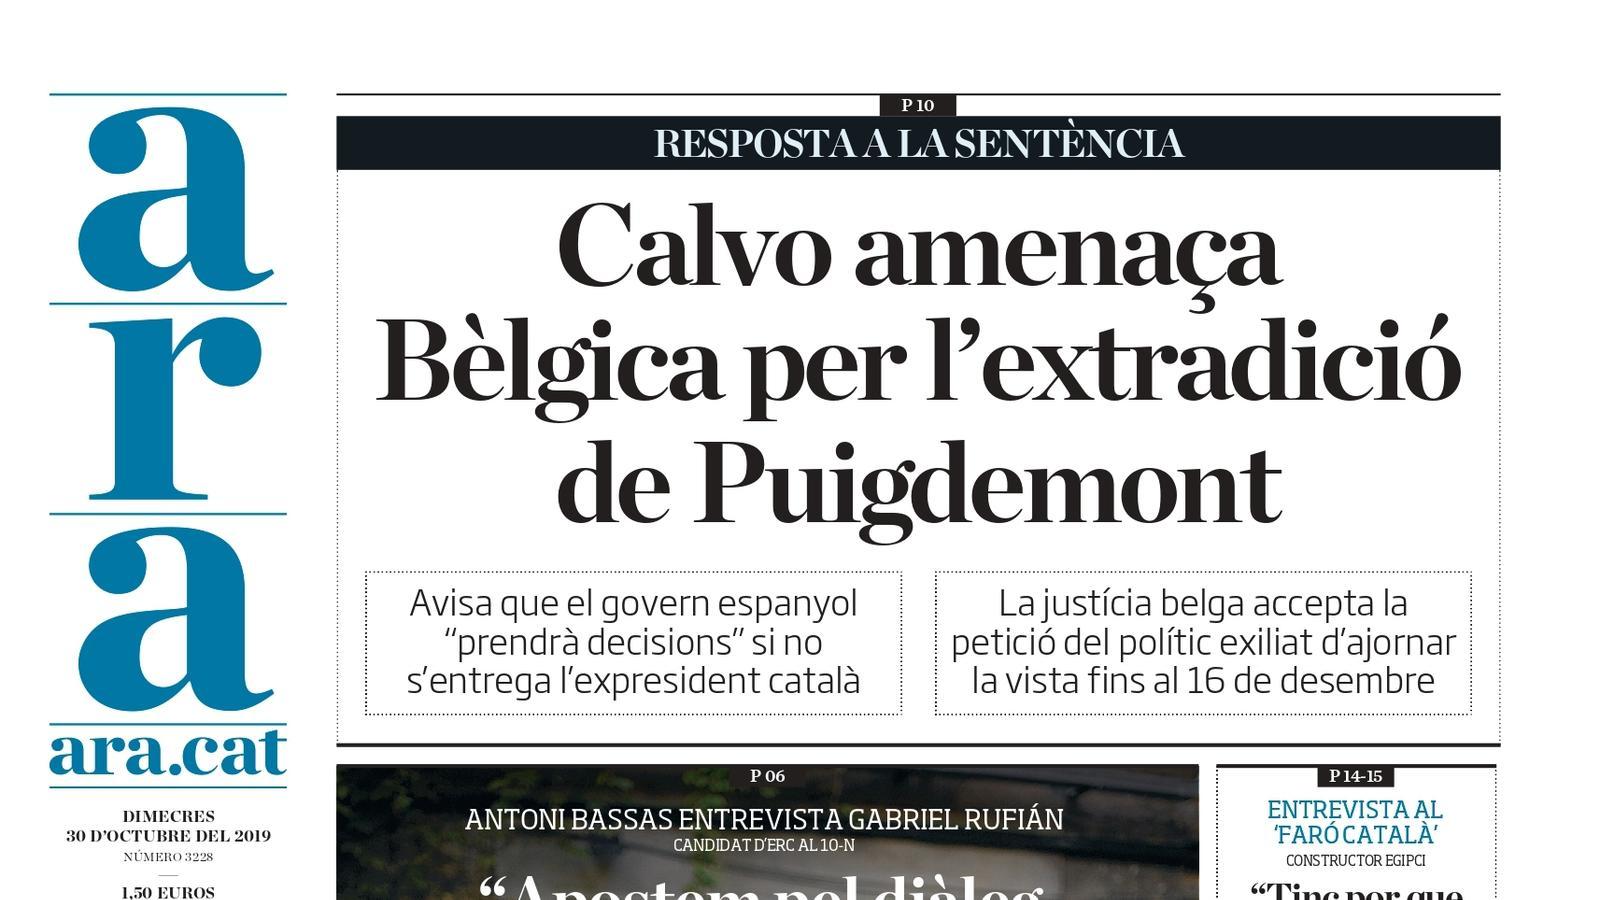 "Calvo amenaça Bèlgica per l'extradició de Puigdemont", la portada de l'ARA